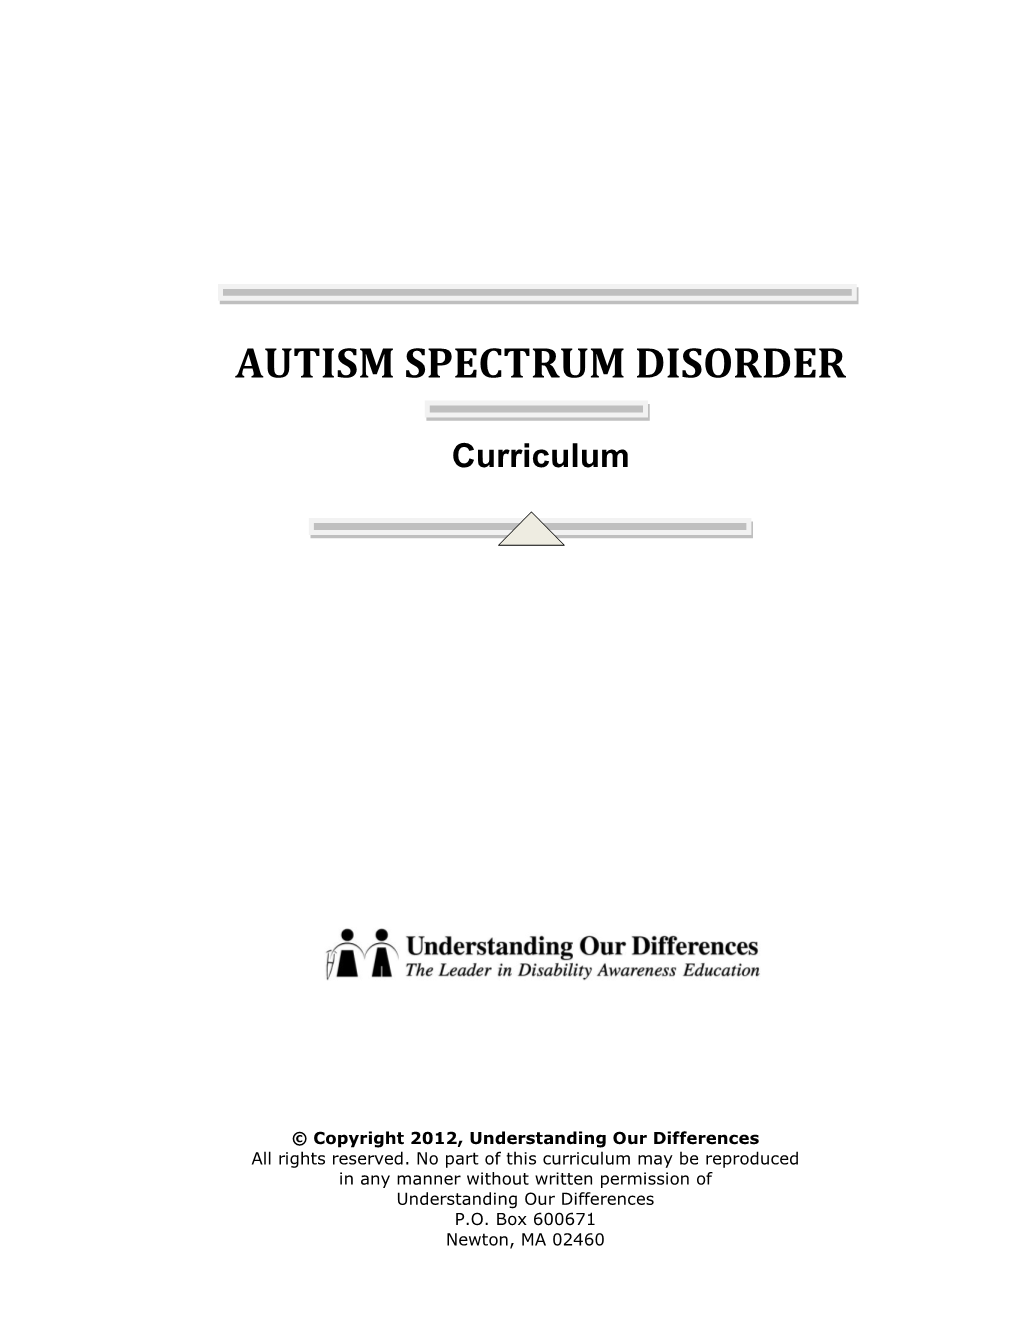 Autism Spectrum Disorder Curriculum